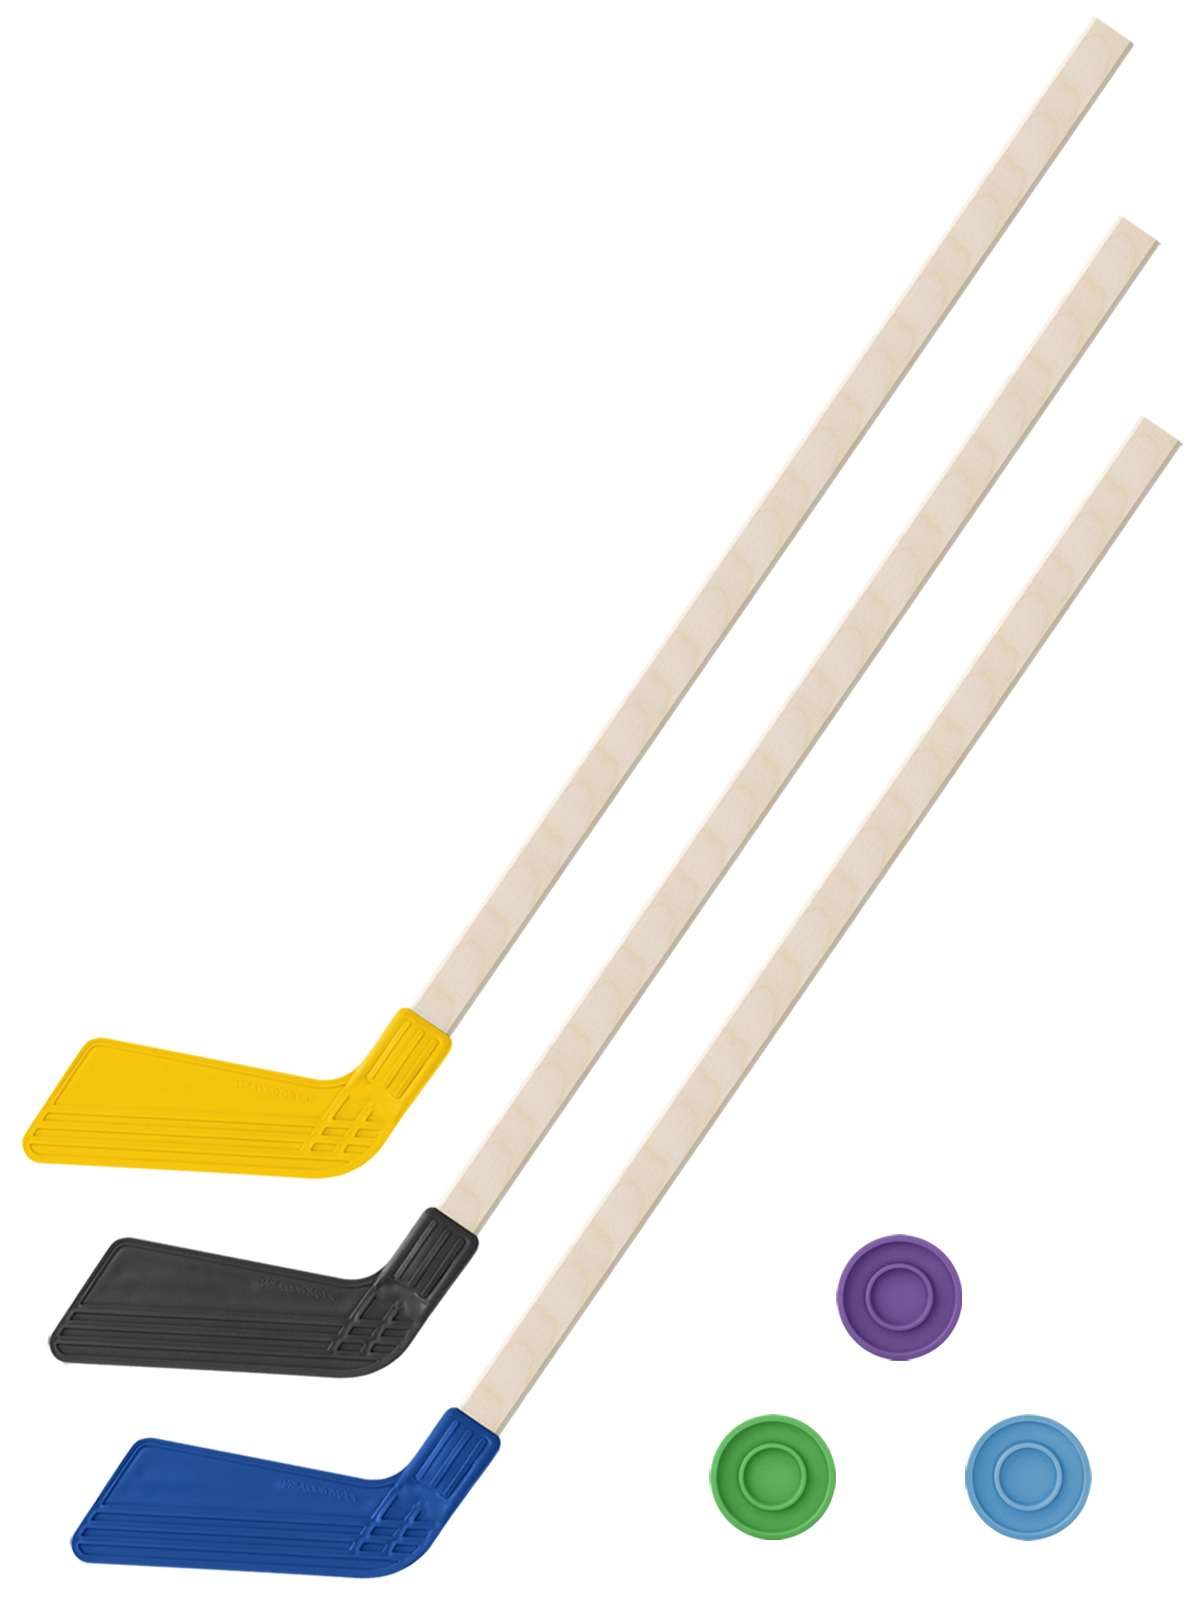 Детский хоккейный набор Задира-плюс 3 в 1 Клюшка хоккейная 80см (жёл,черн,син) + 3 шайбы клюшка флорбольная acito apache 33 yellow 80 round левый